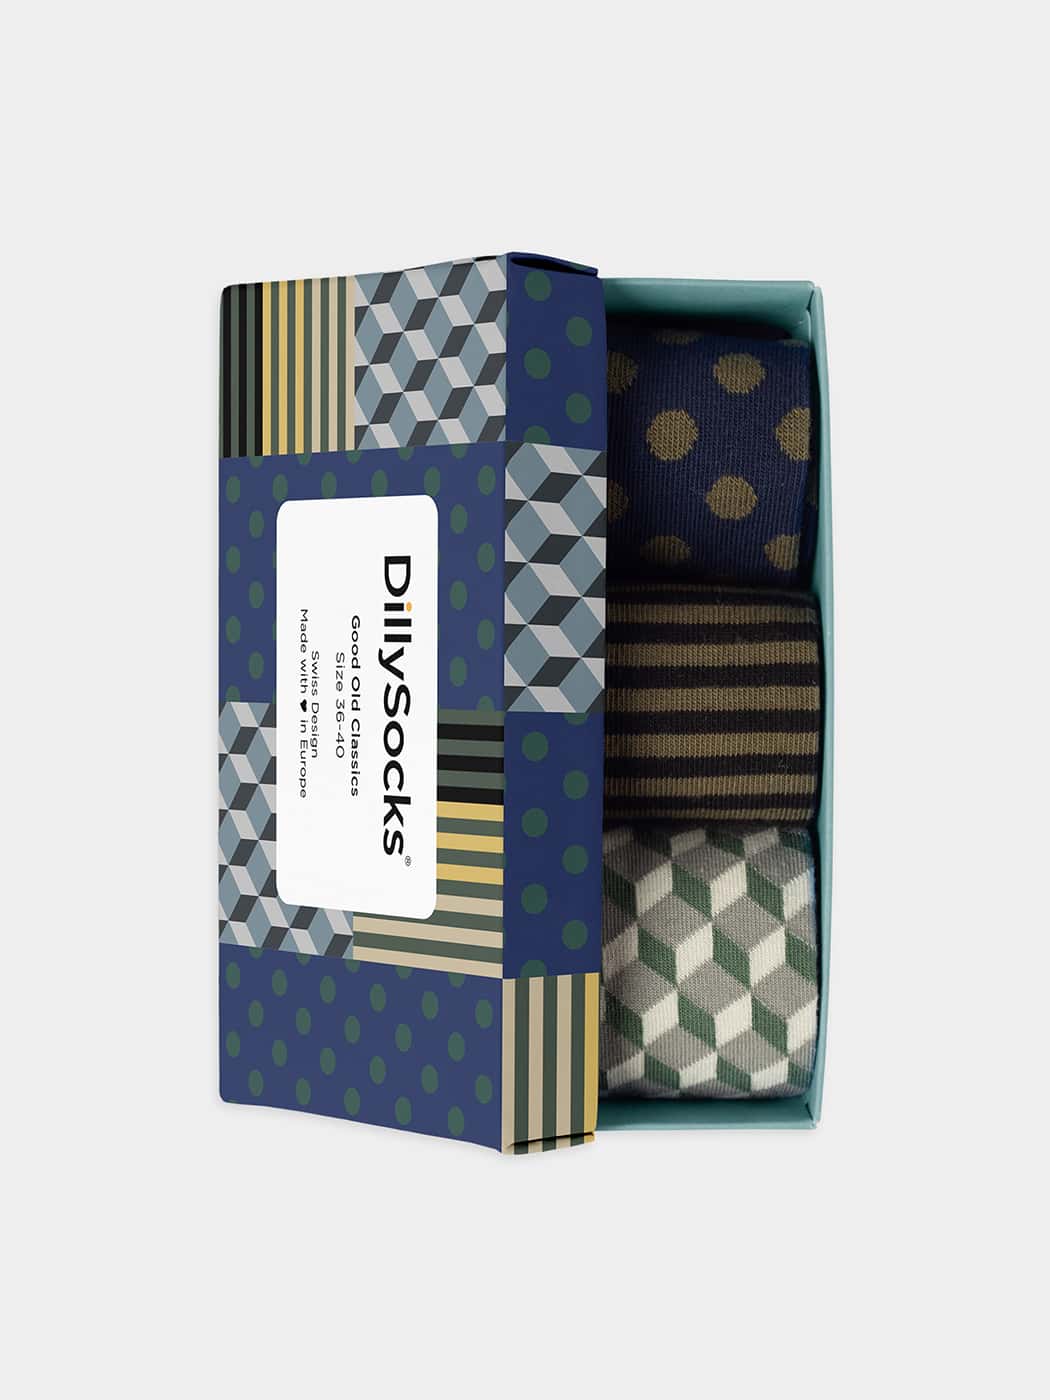 - Socken-Geschenkbox in Bunt mit Streifen Punkte Motiv/Muster von DillySocks